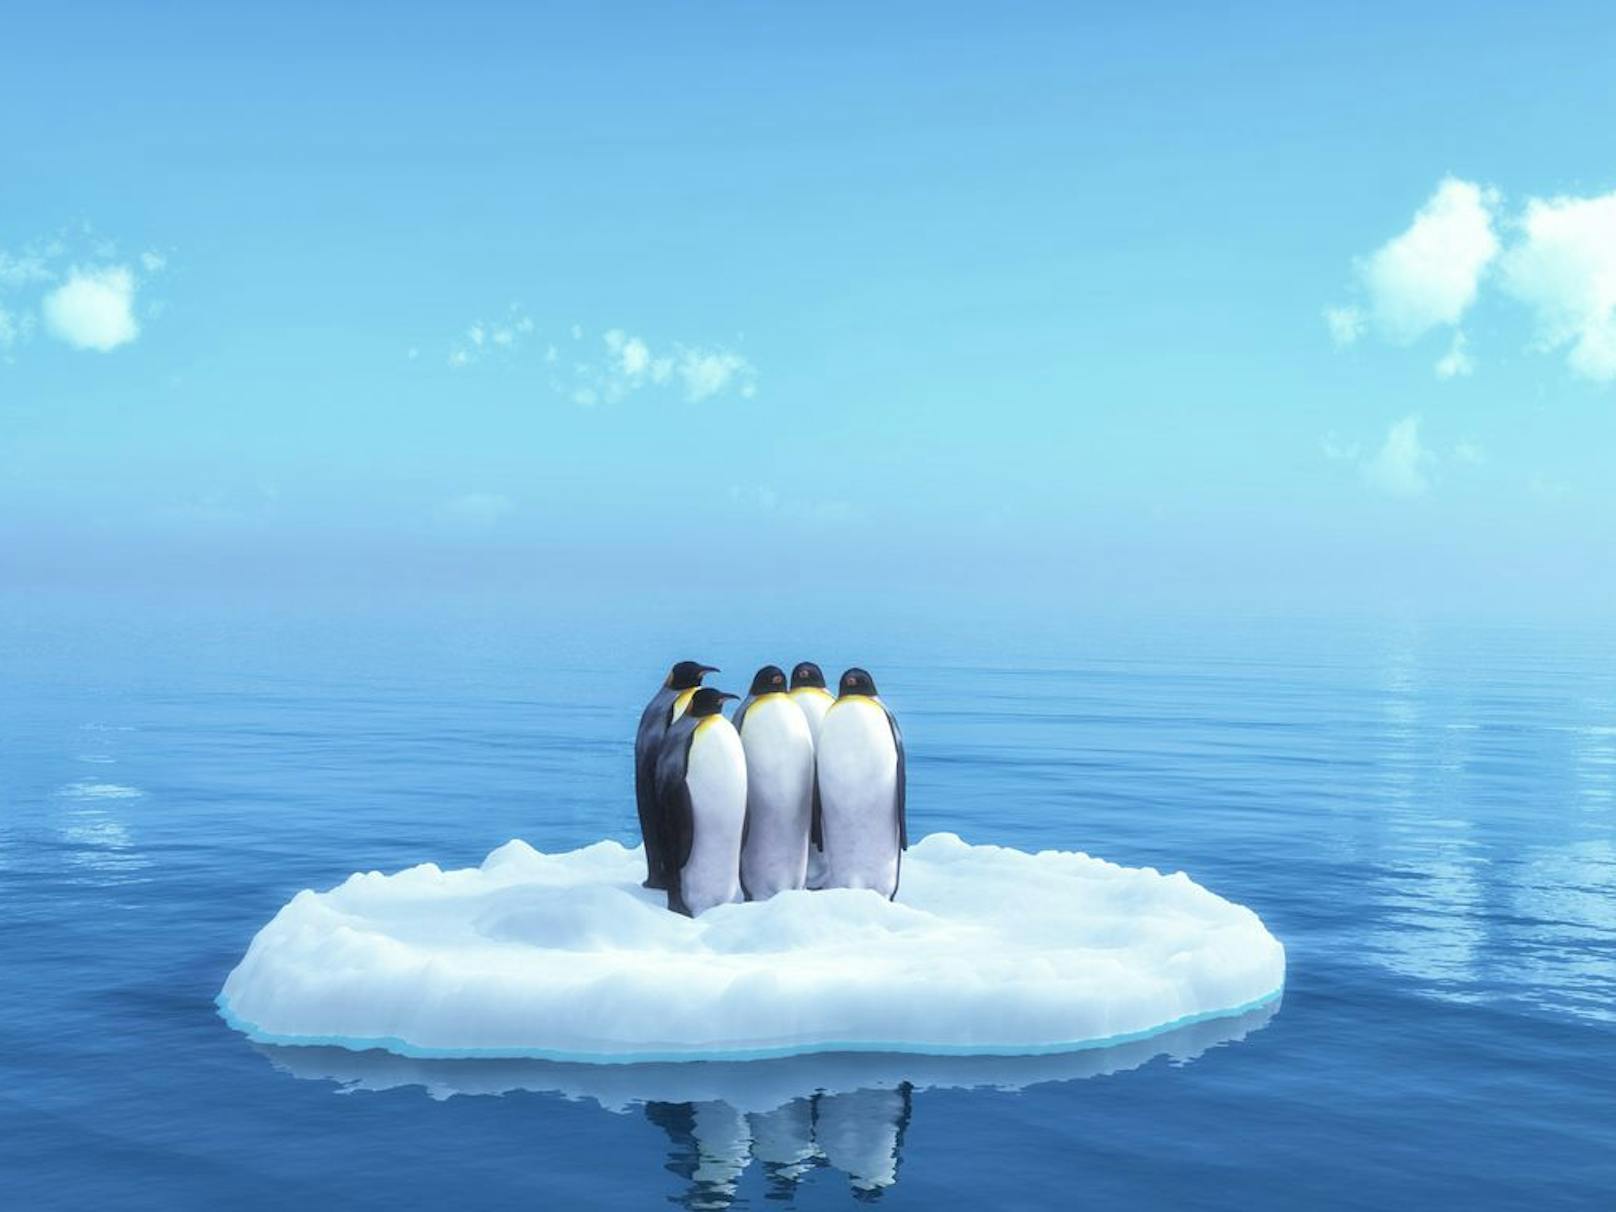 Pinguine auf einer Eisscholle im antarktischen Meer.